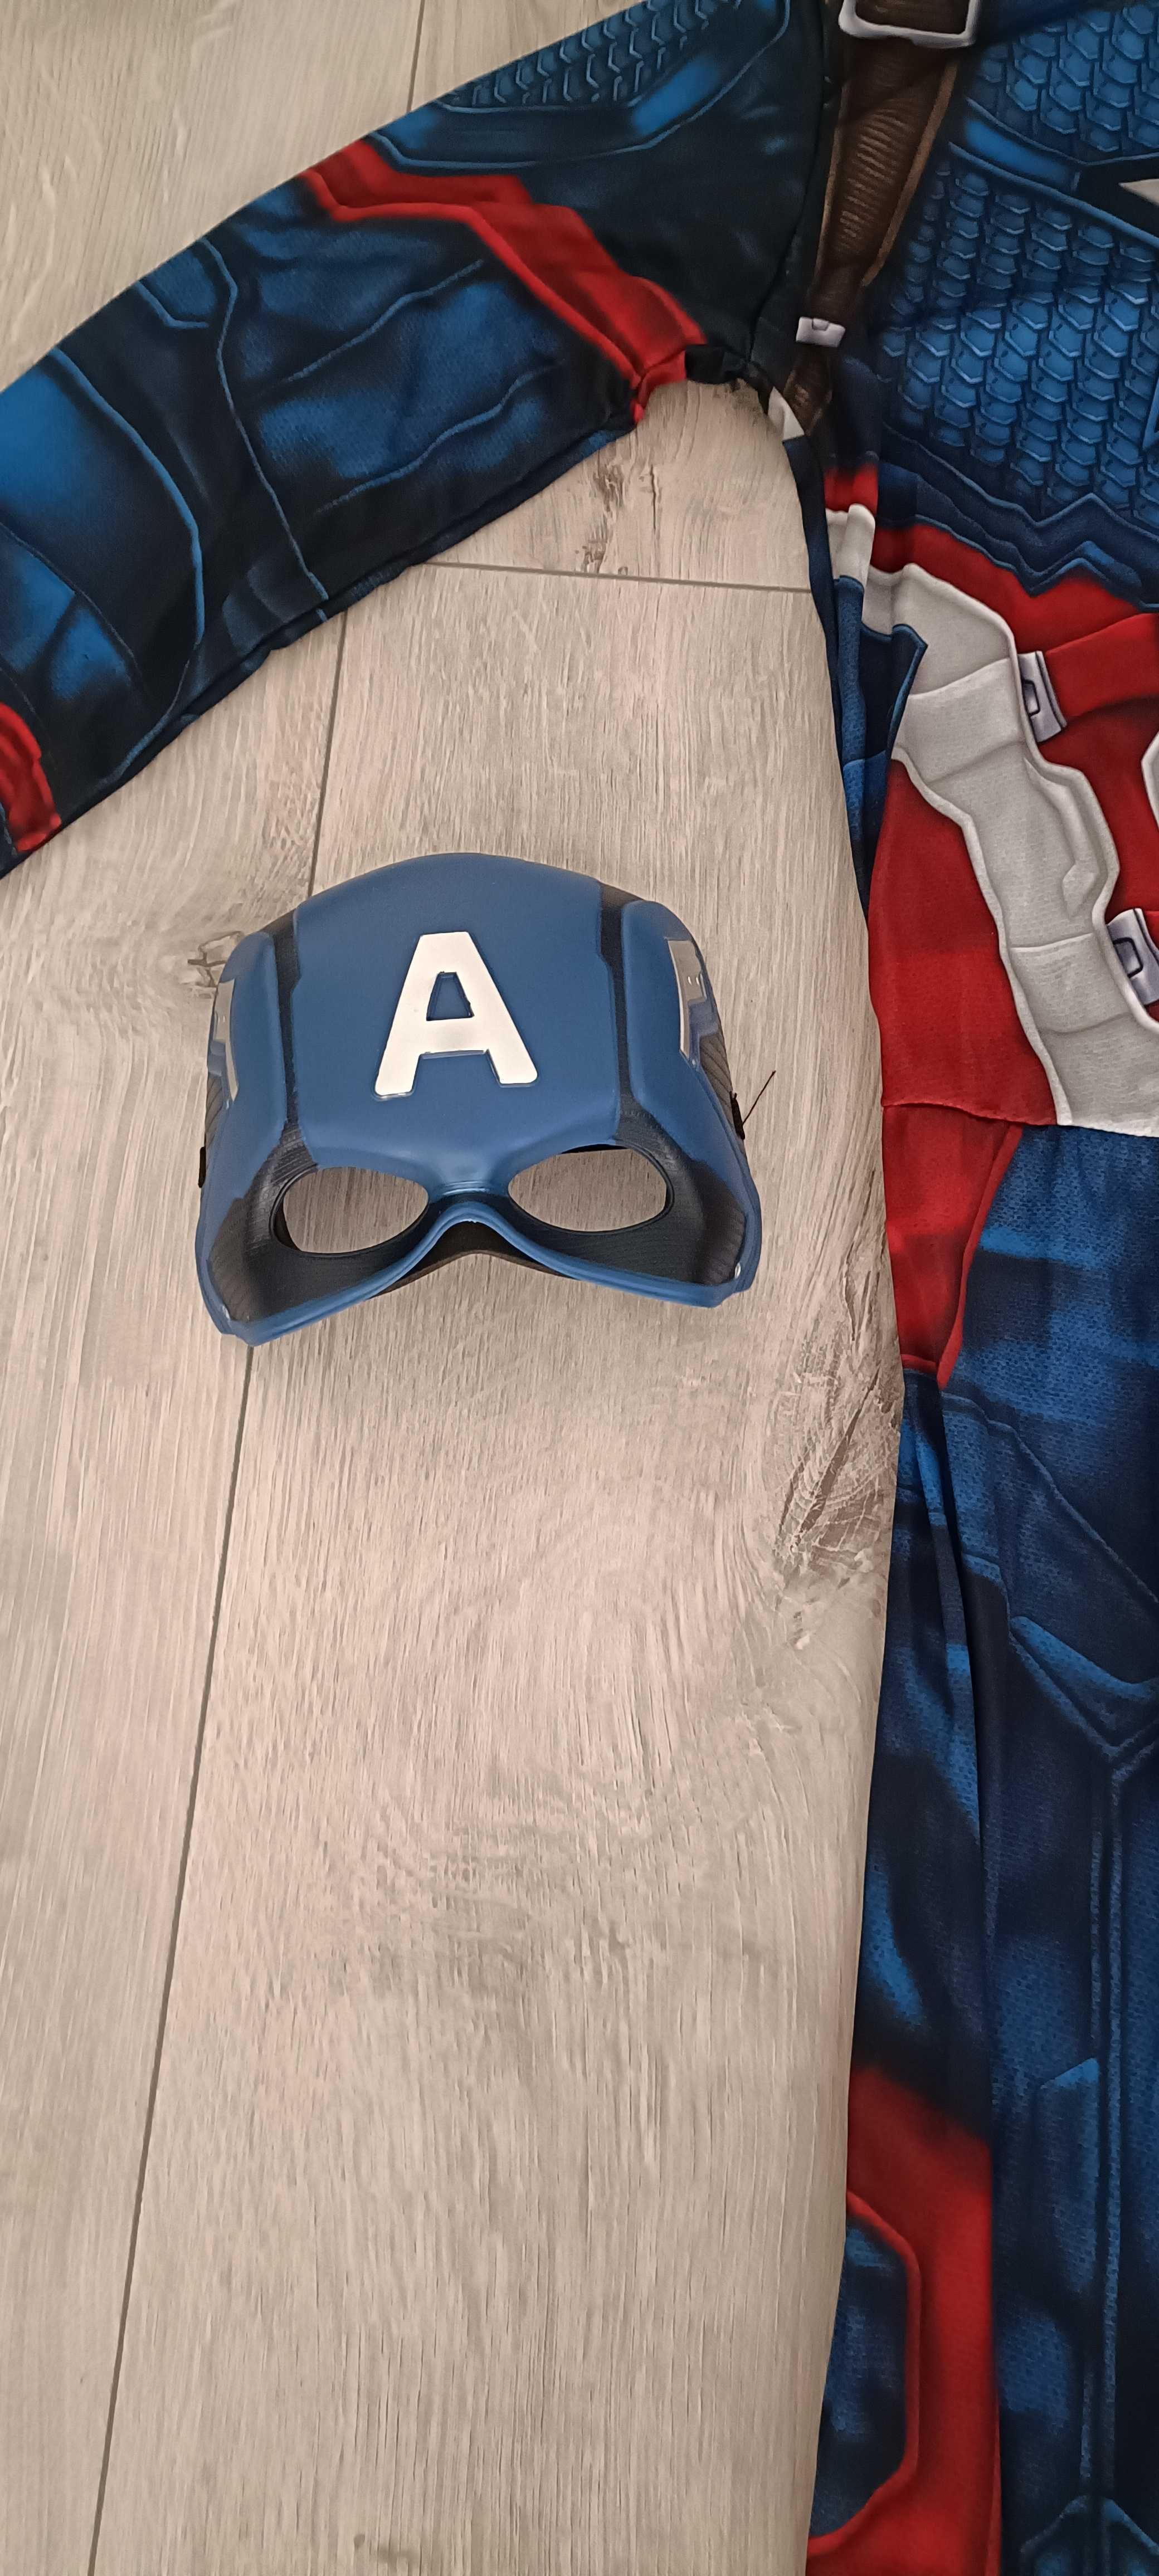 Costum pentru copii - Marvel Captain America, marimea L